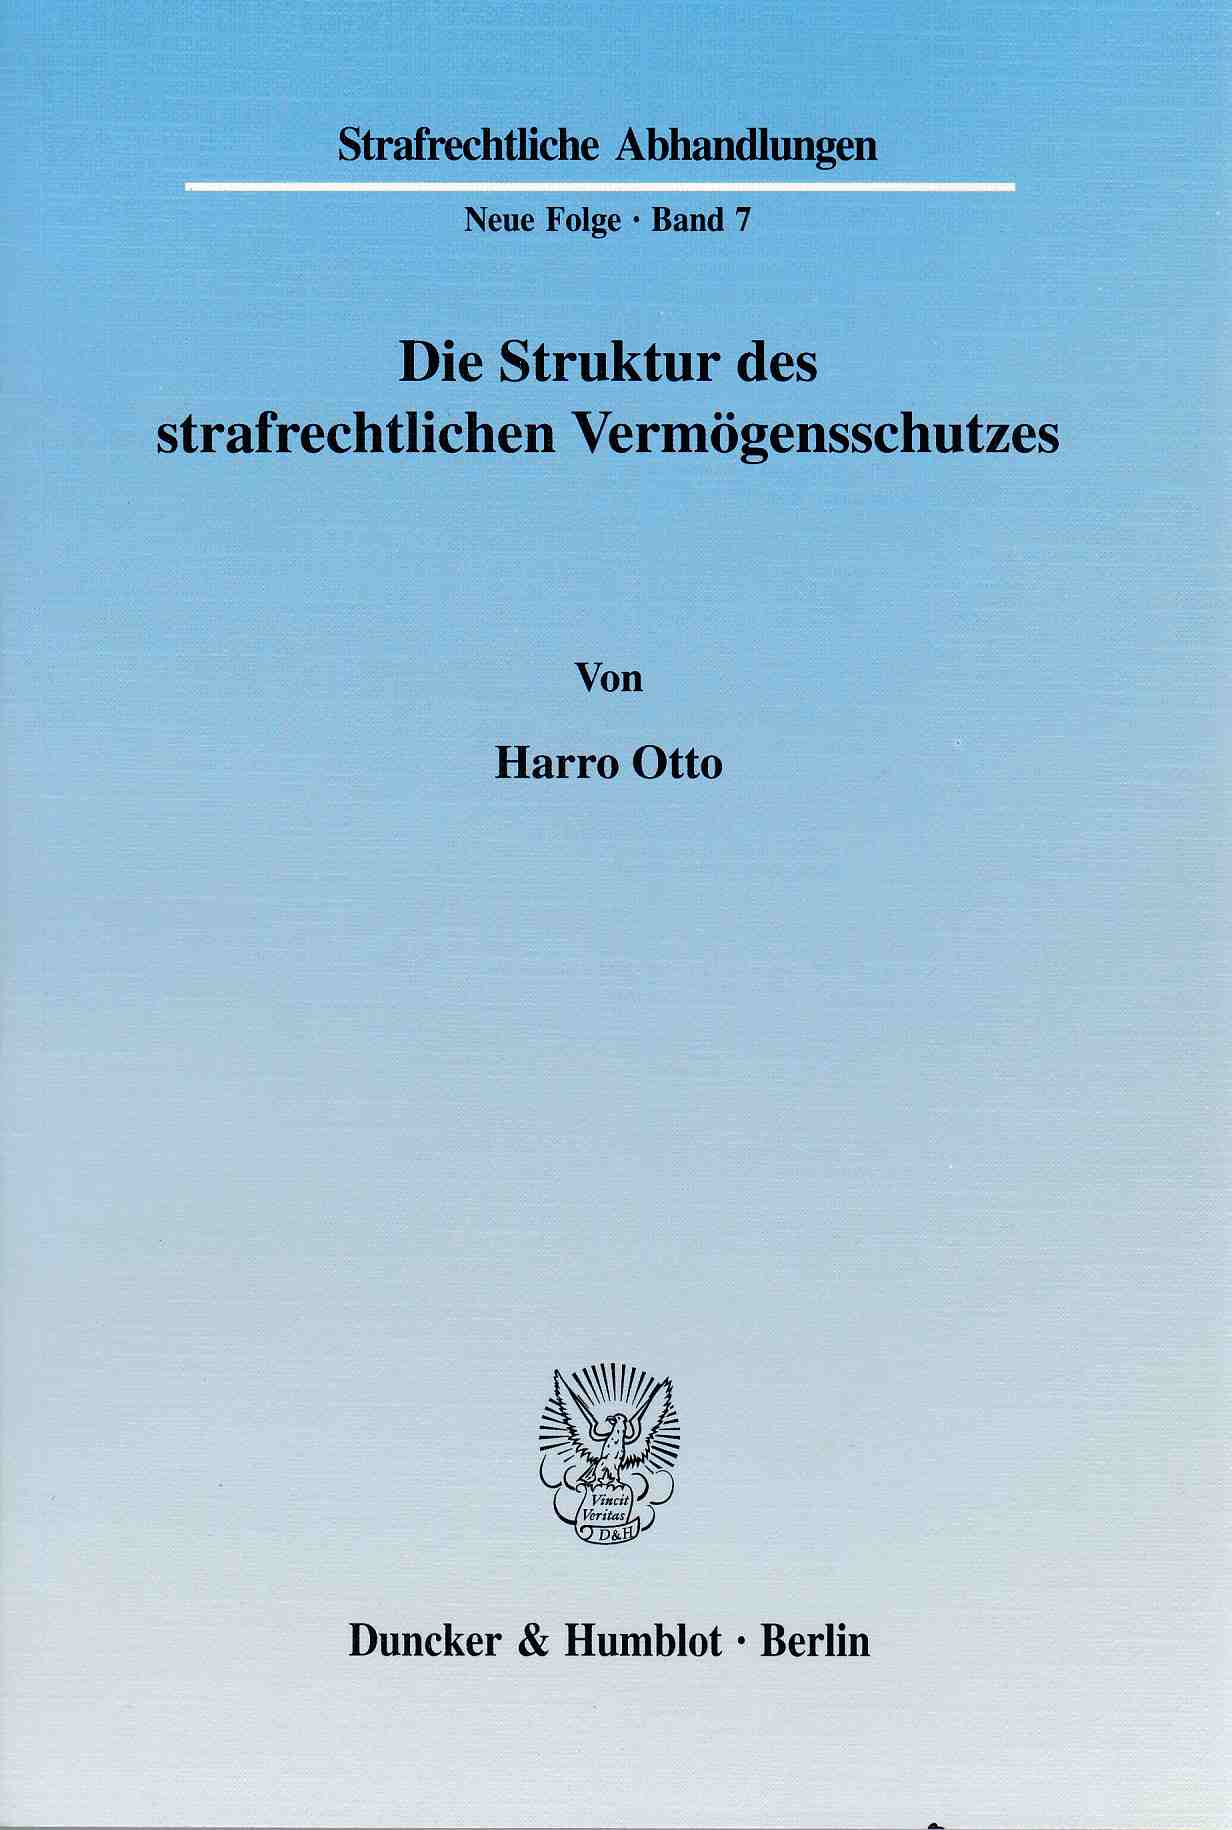 Die Struktur des strafrechtlichen Vermögensschutzes. Strafrechtliche Abhandlungen. Neue Folge (SRA), Band 7. - Otto, Harro